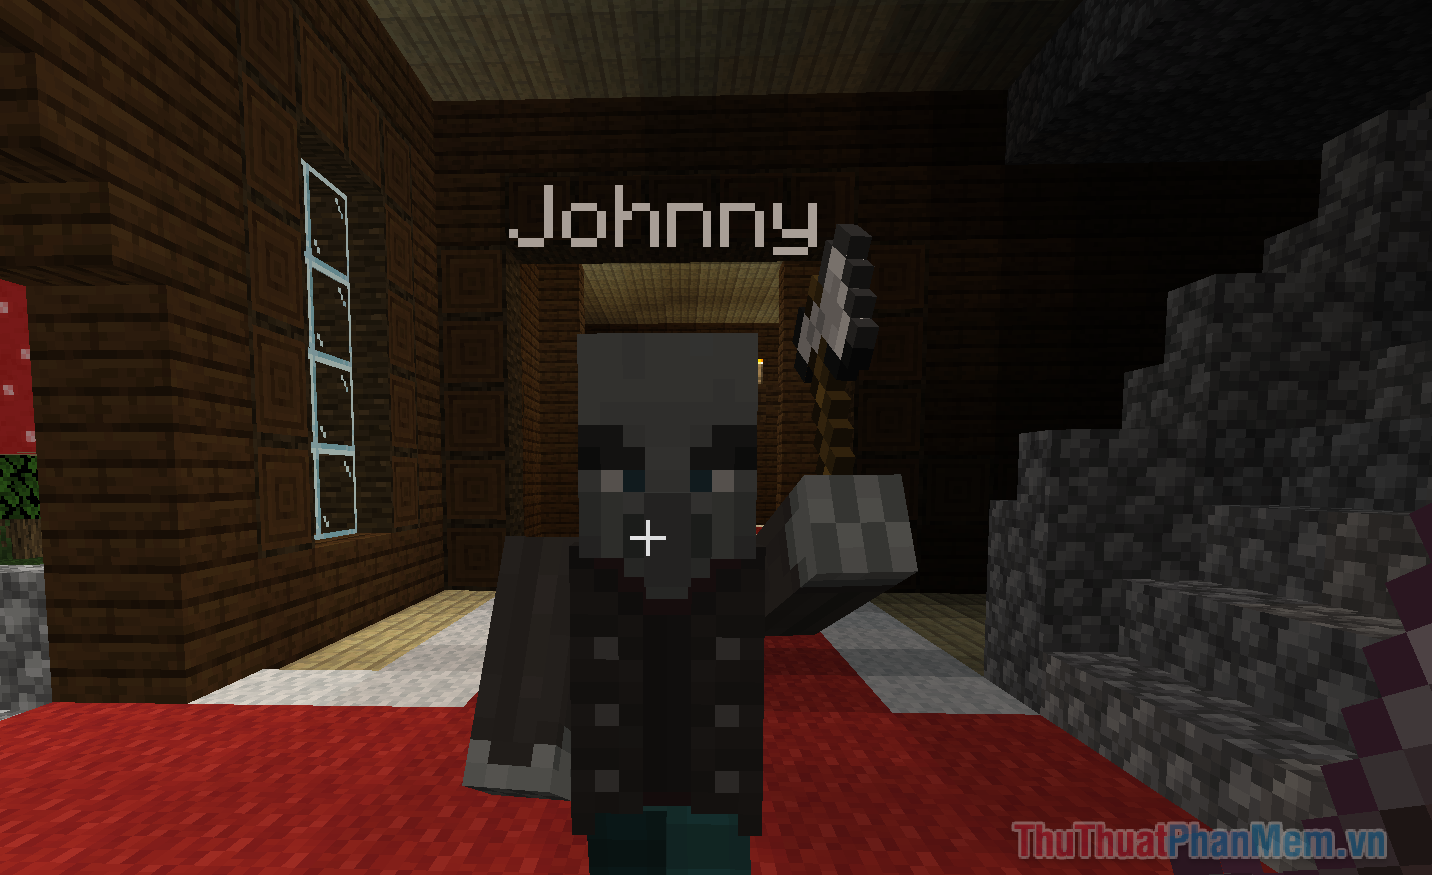 Đặt tên cho Vindicator “Johnny” sẽ khiến nó trở nên hung hăng và tấn công hầu hết các mob xuất hiện trước mặt nó